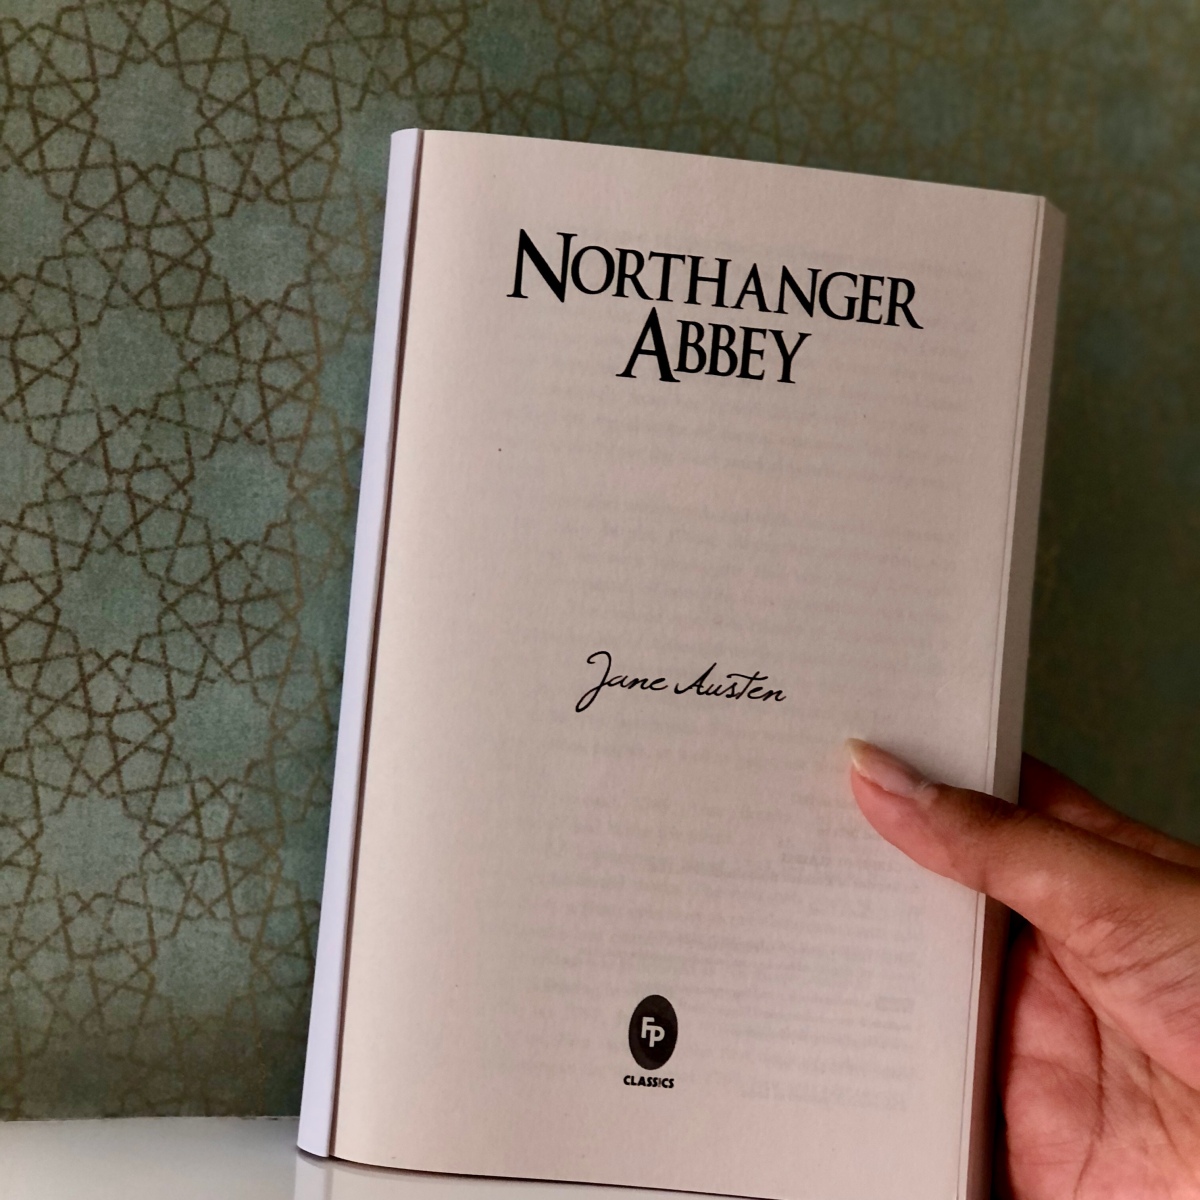 NORTHANGER ABBEY by Jane Austen